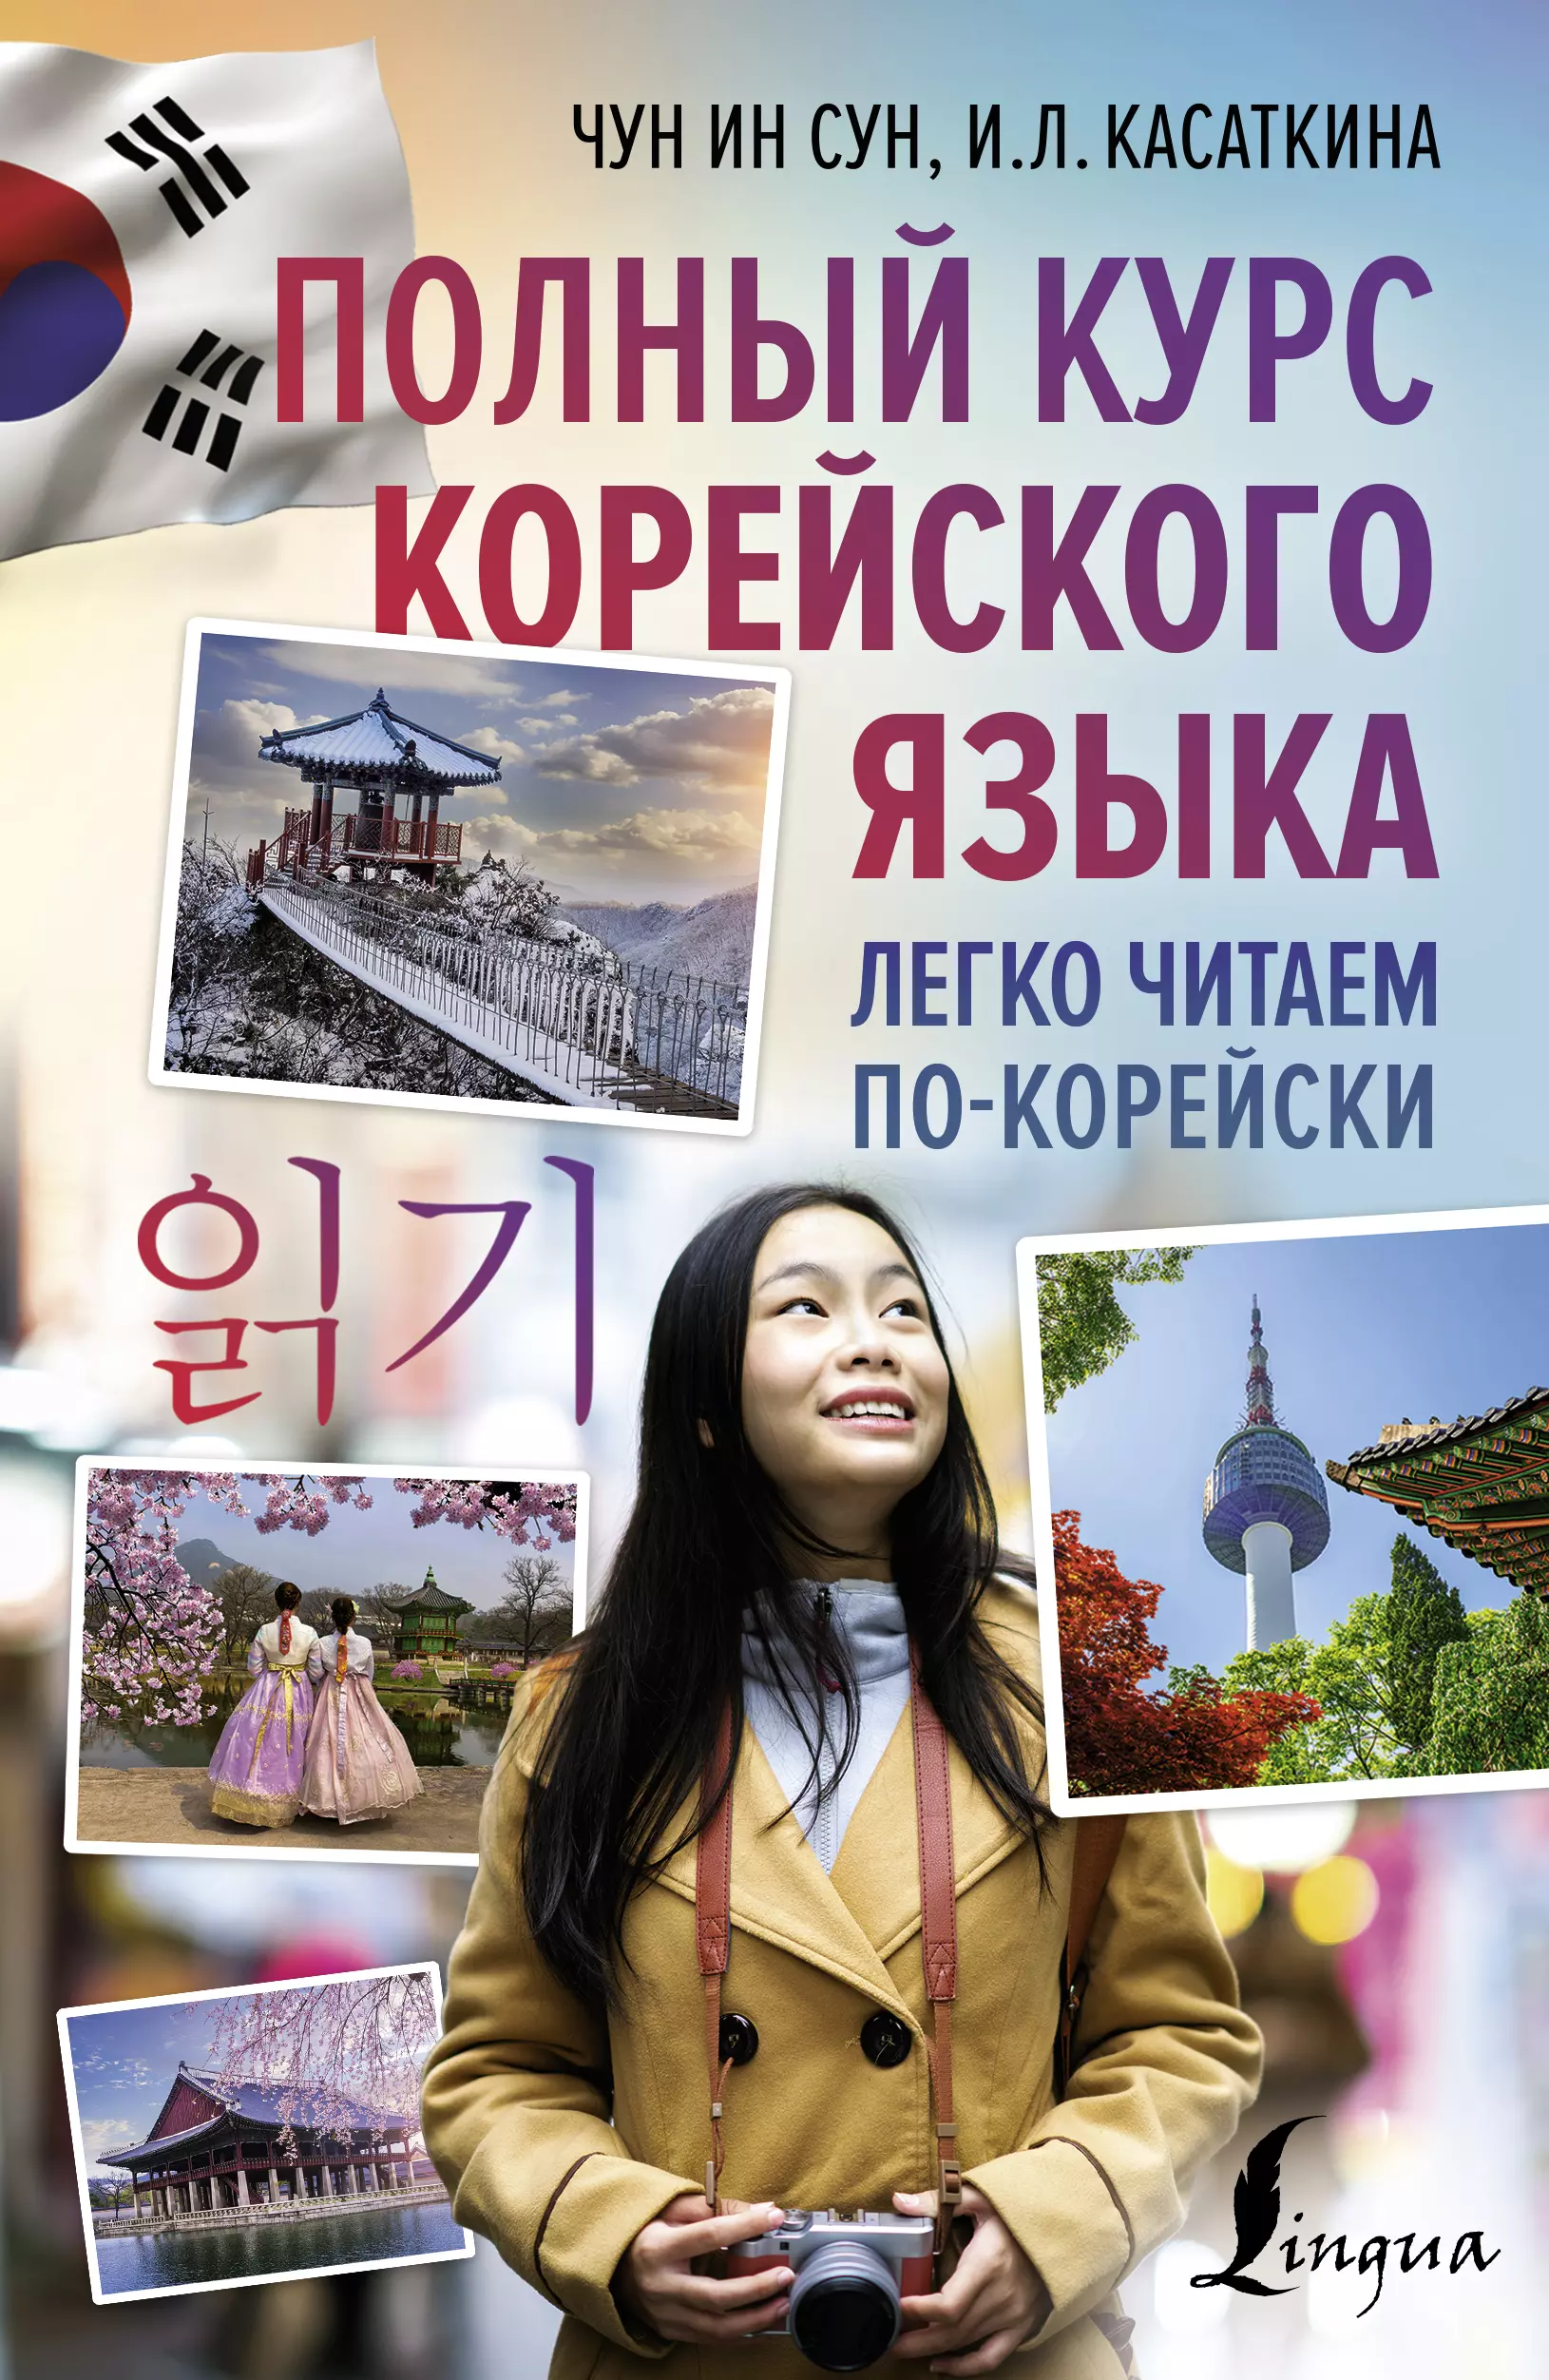 Касаткина Ирина Львовна - Полный курс корейского языка. Легко читаем по-корейски